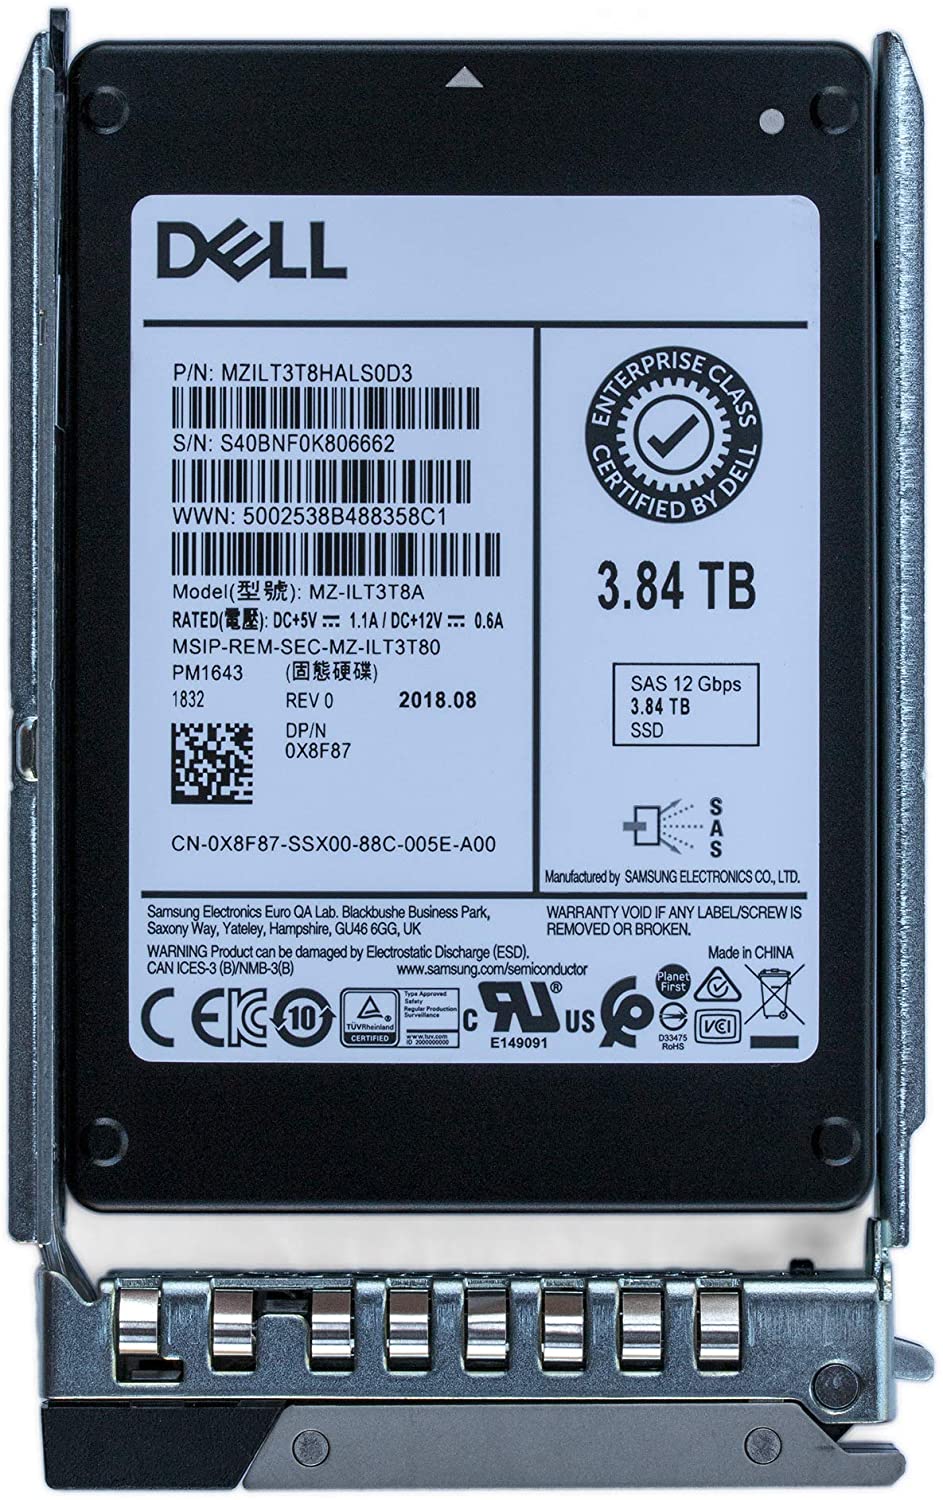 Dell PowerEdge14G 3.84TB 2.5" SAS 12Gbps Hotplug SSD PM1643 400-AZCK X8F87 3.84TB 2.5" SAS 12Gbps Hotplug SSD